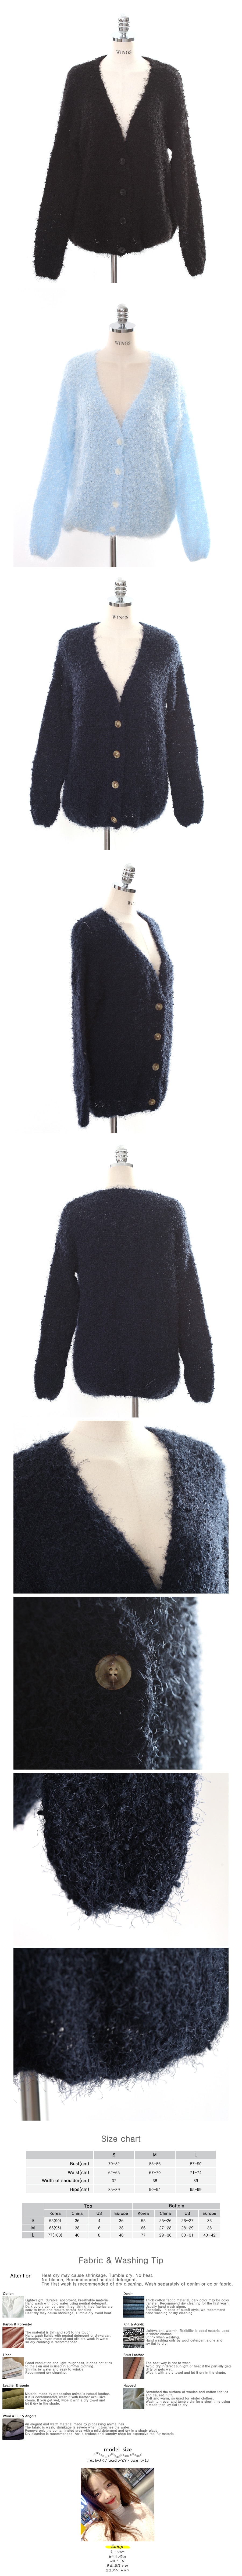 Fuzzy Knit Cardigan #Black One Size(S-M)